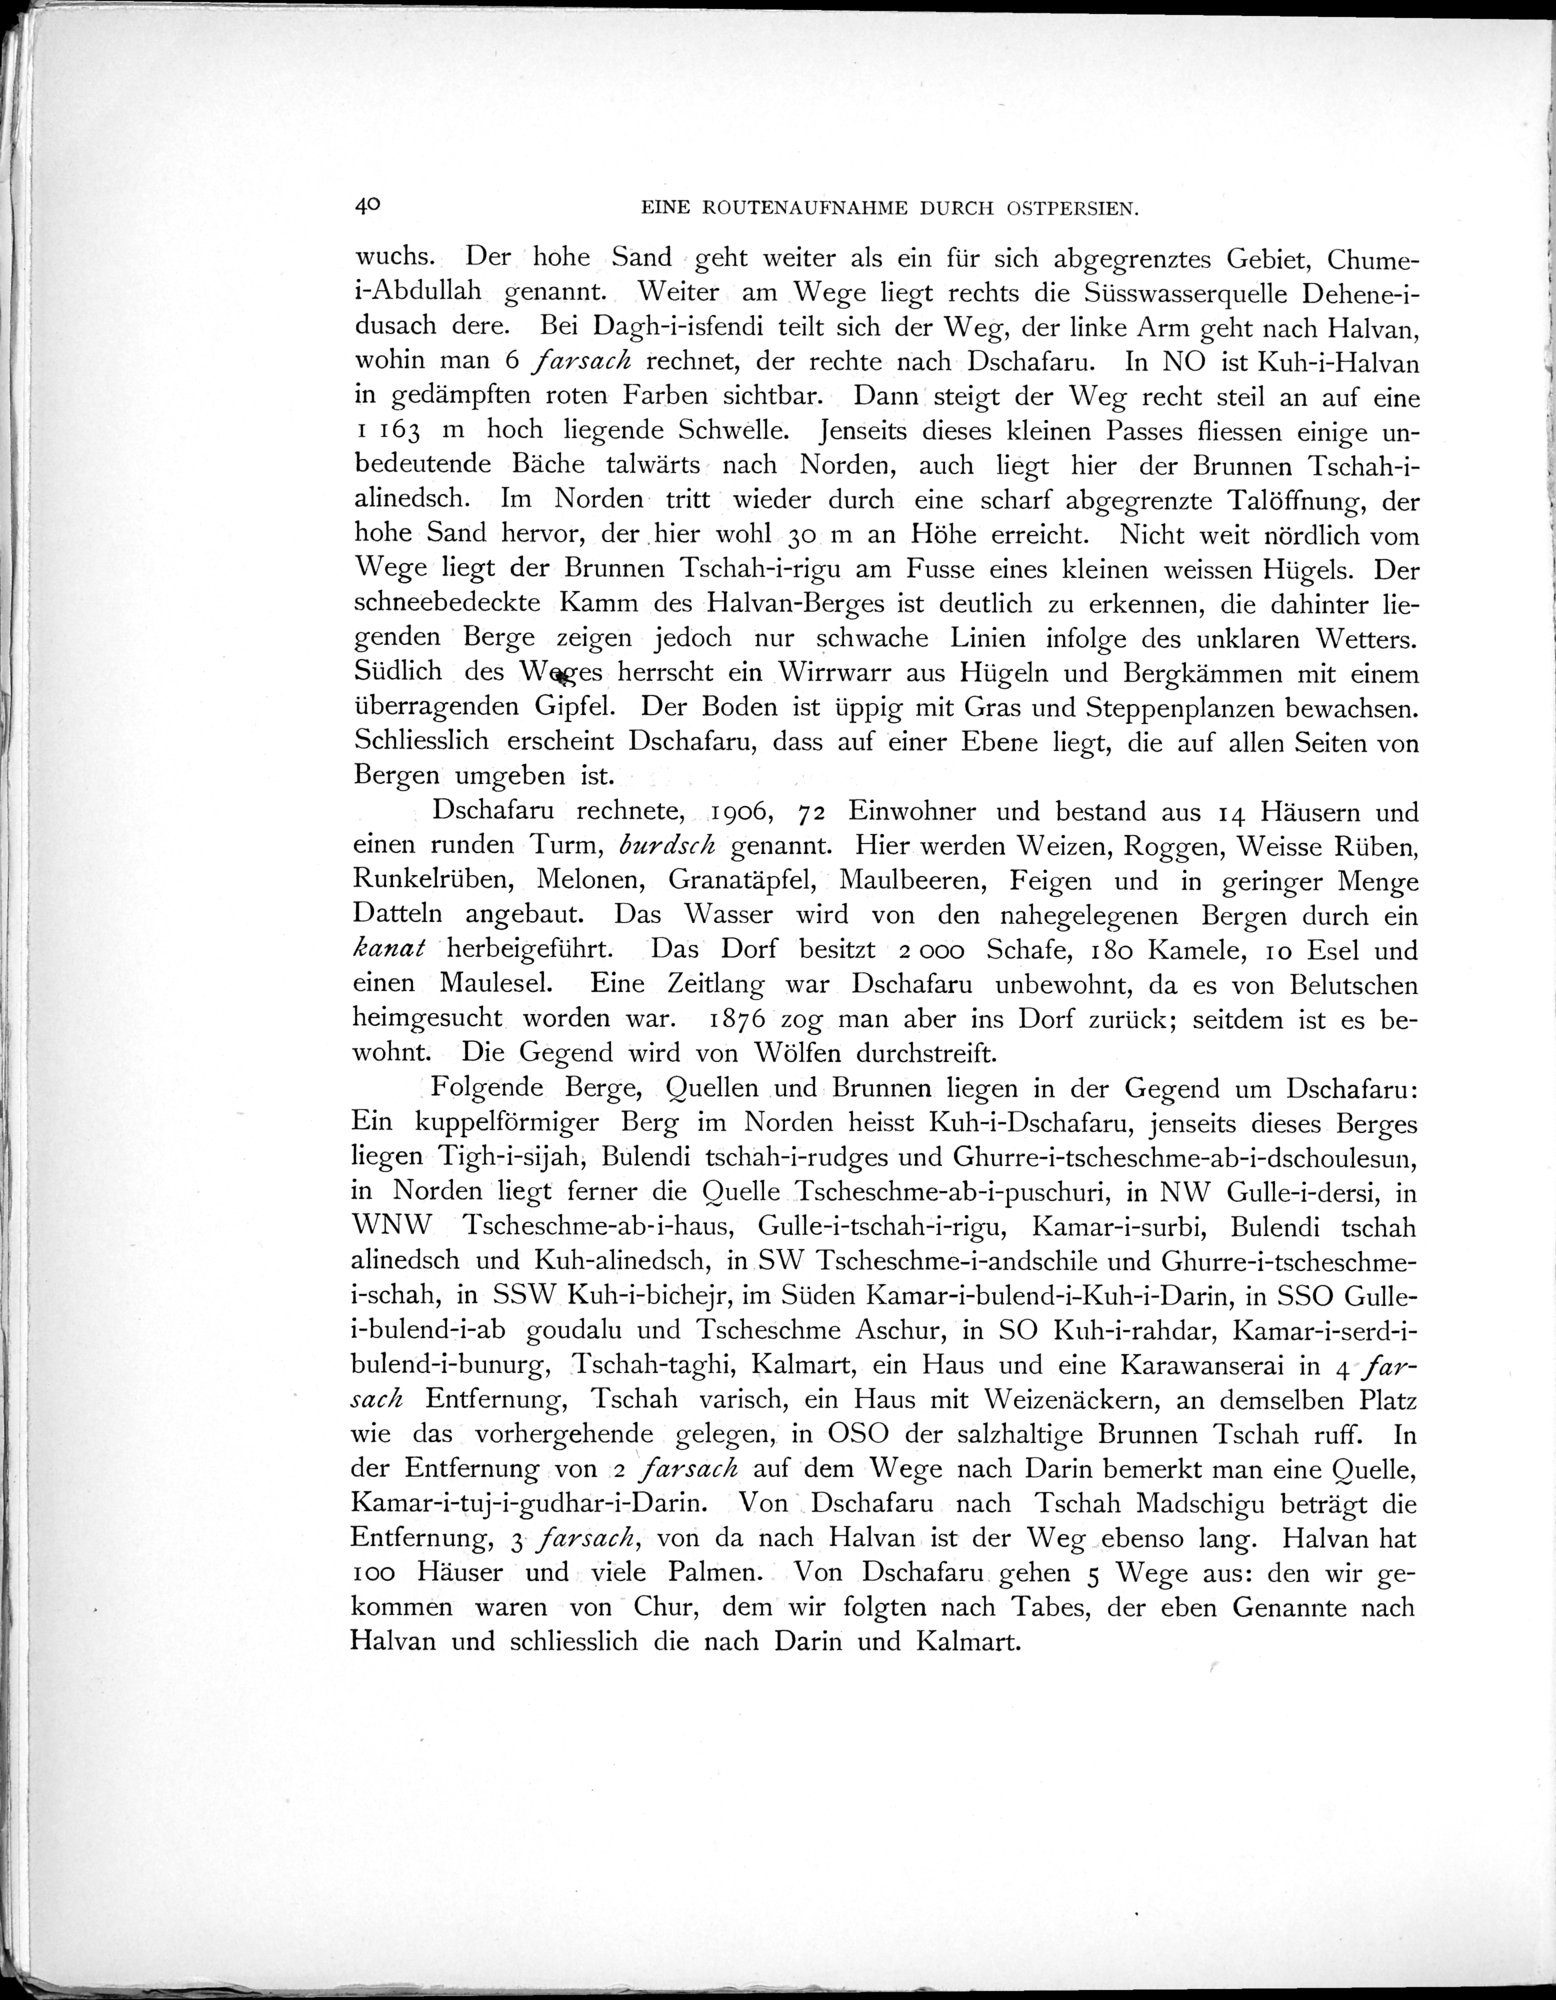 Eine Routenaufnahme durch Ostpersien : vol.1 / 112 ページ（白黒高解像度画像）